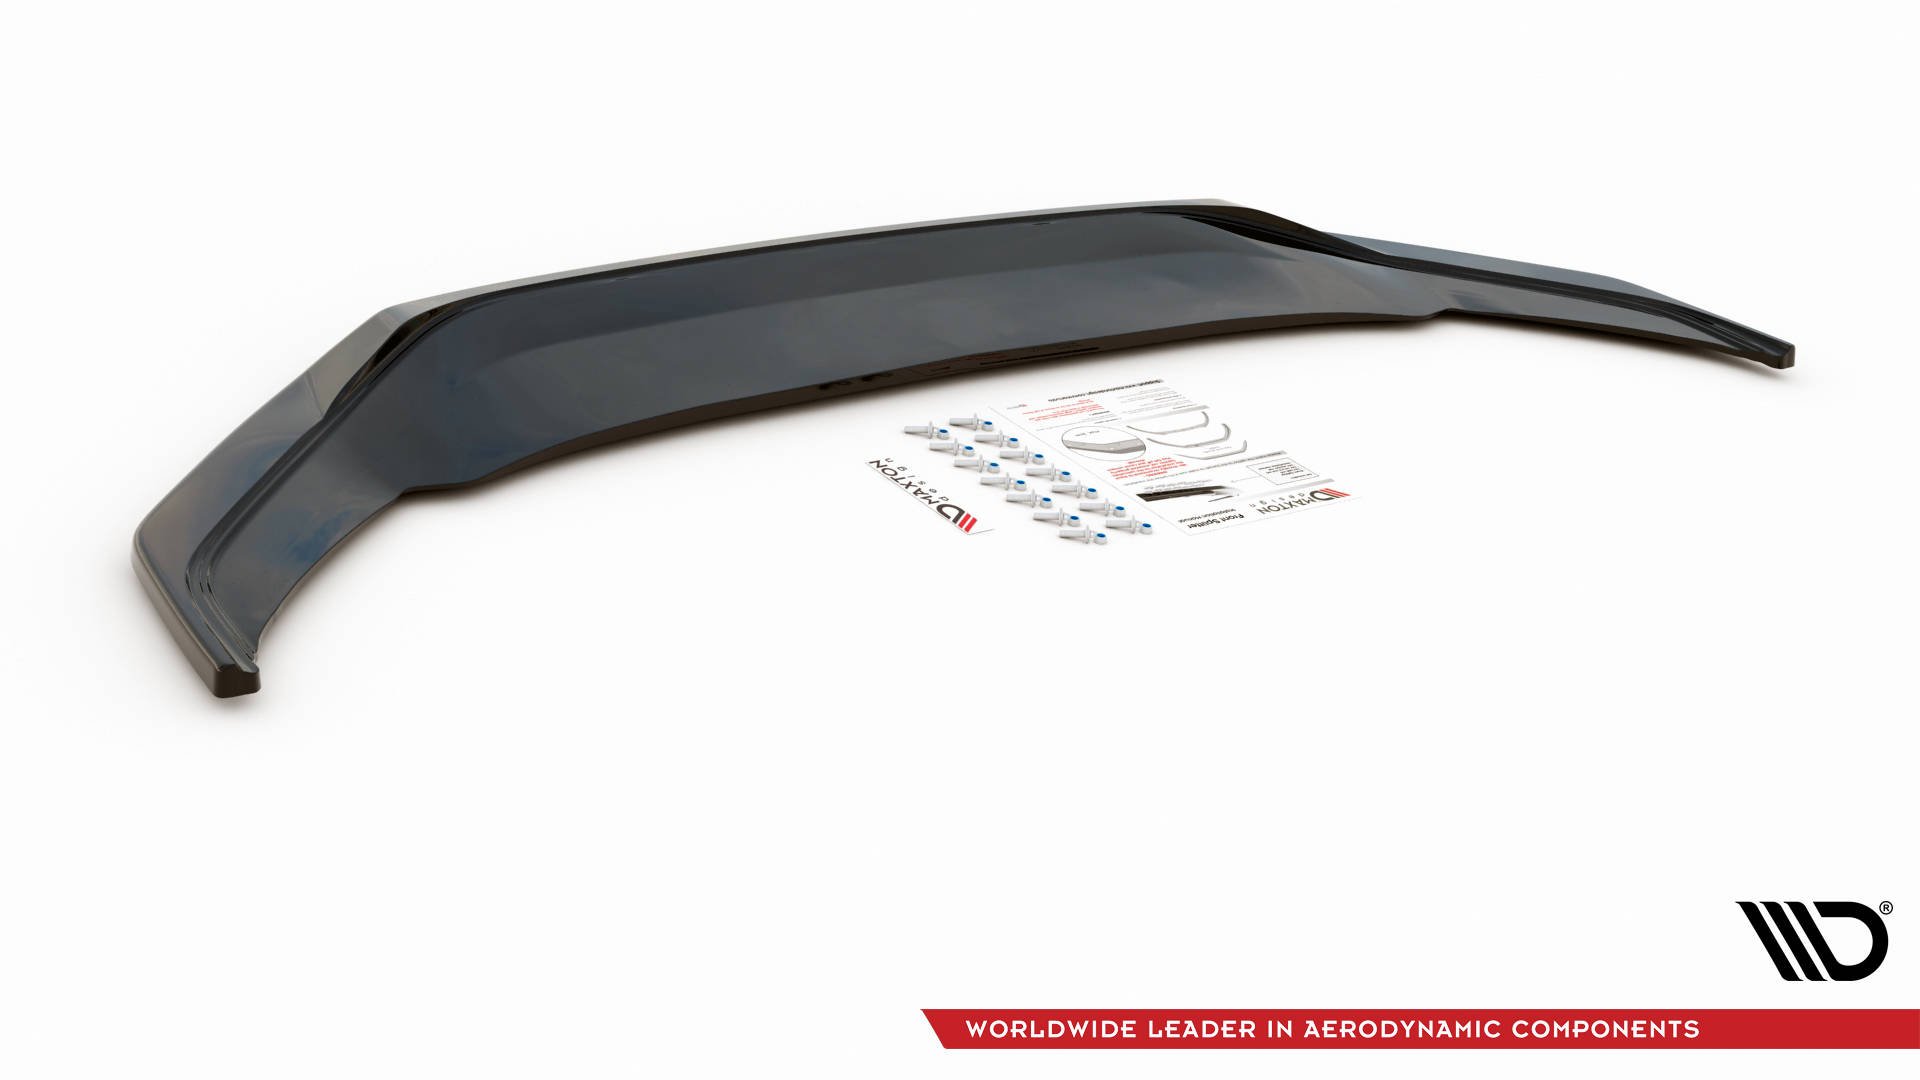 Maxton Design Front Ansatz V.3 für Volkswagen Arteon R-Line Facelift schwarz Hochglanz